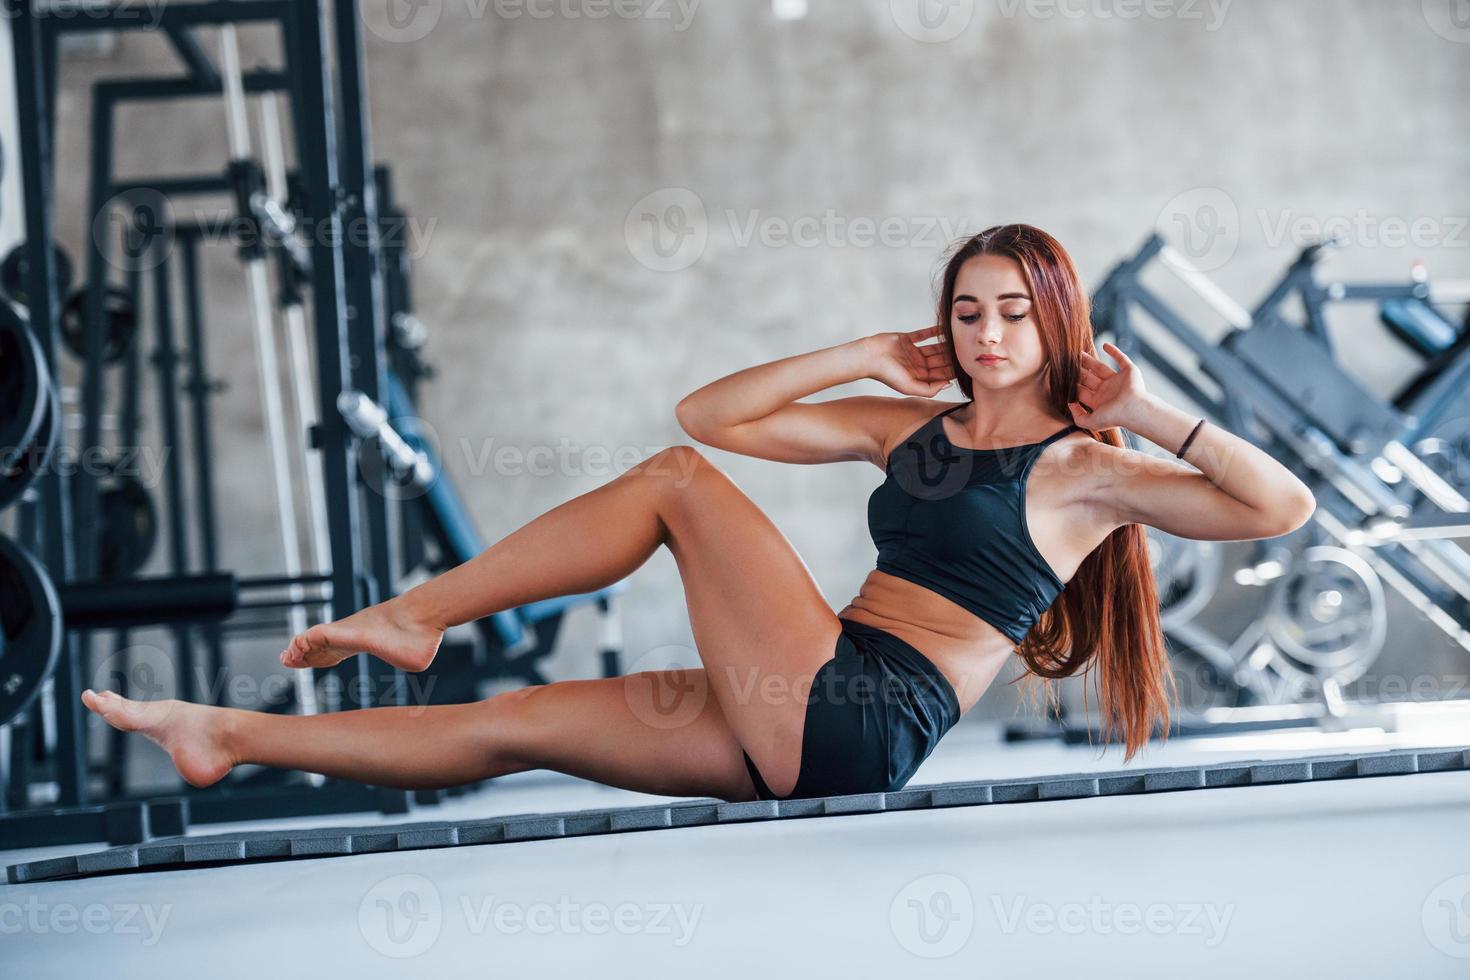 garota jovem fitness em roupas esportivas pretas fazendo exercícios de ioga no ginásio foto